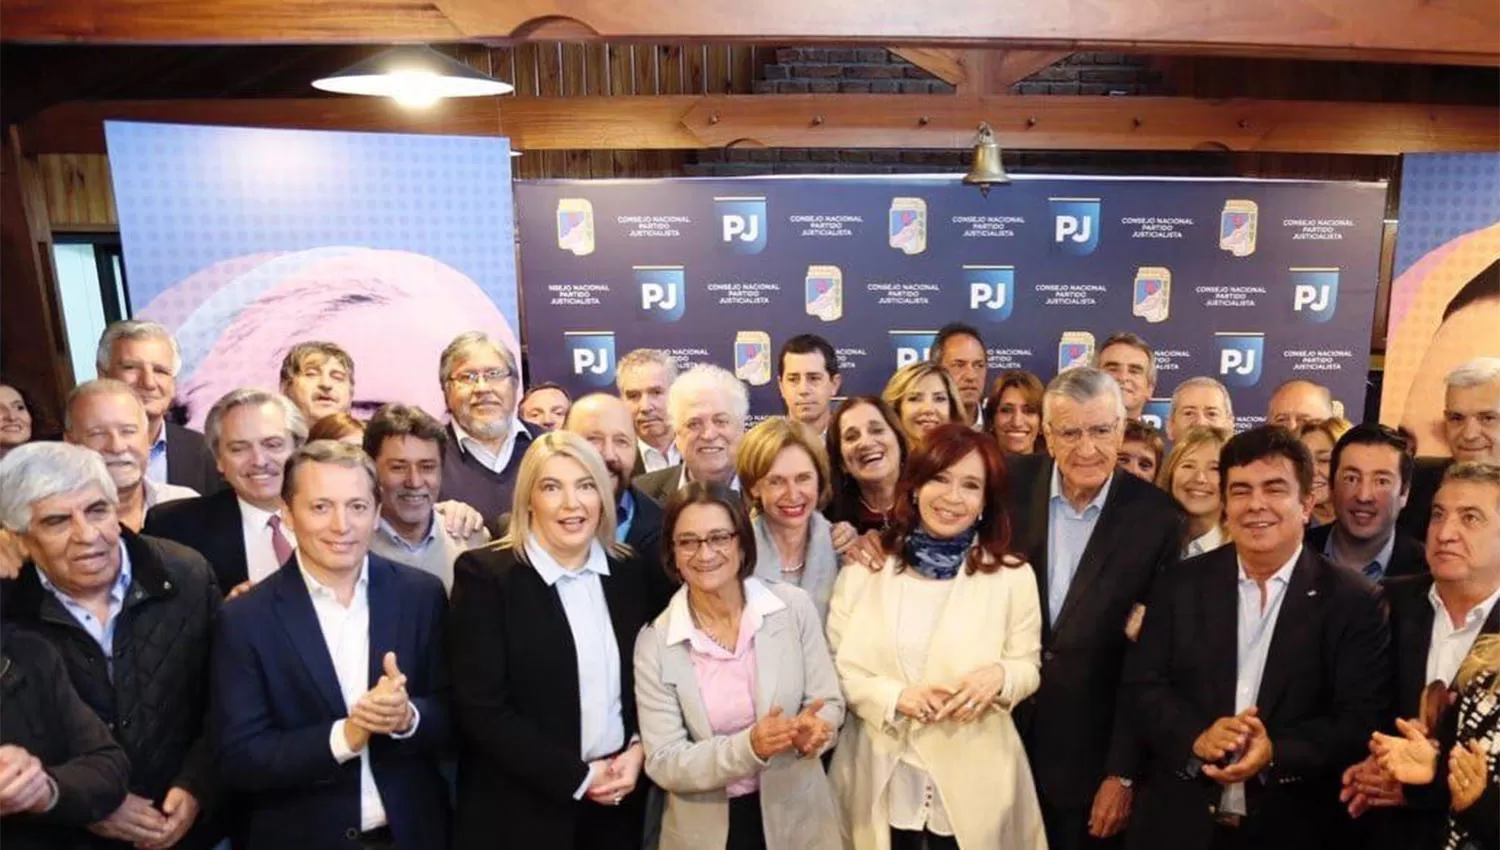 Cristina Kirchner participó de la cumbre del PJ, a la que no asistía desde 2003